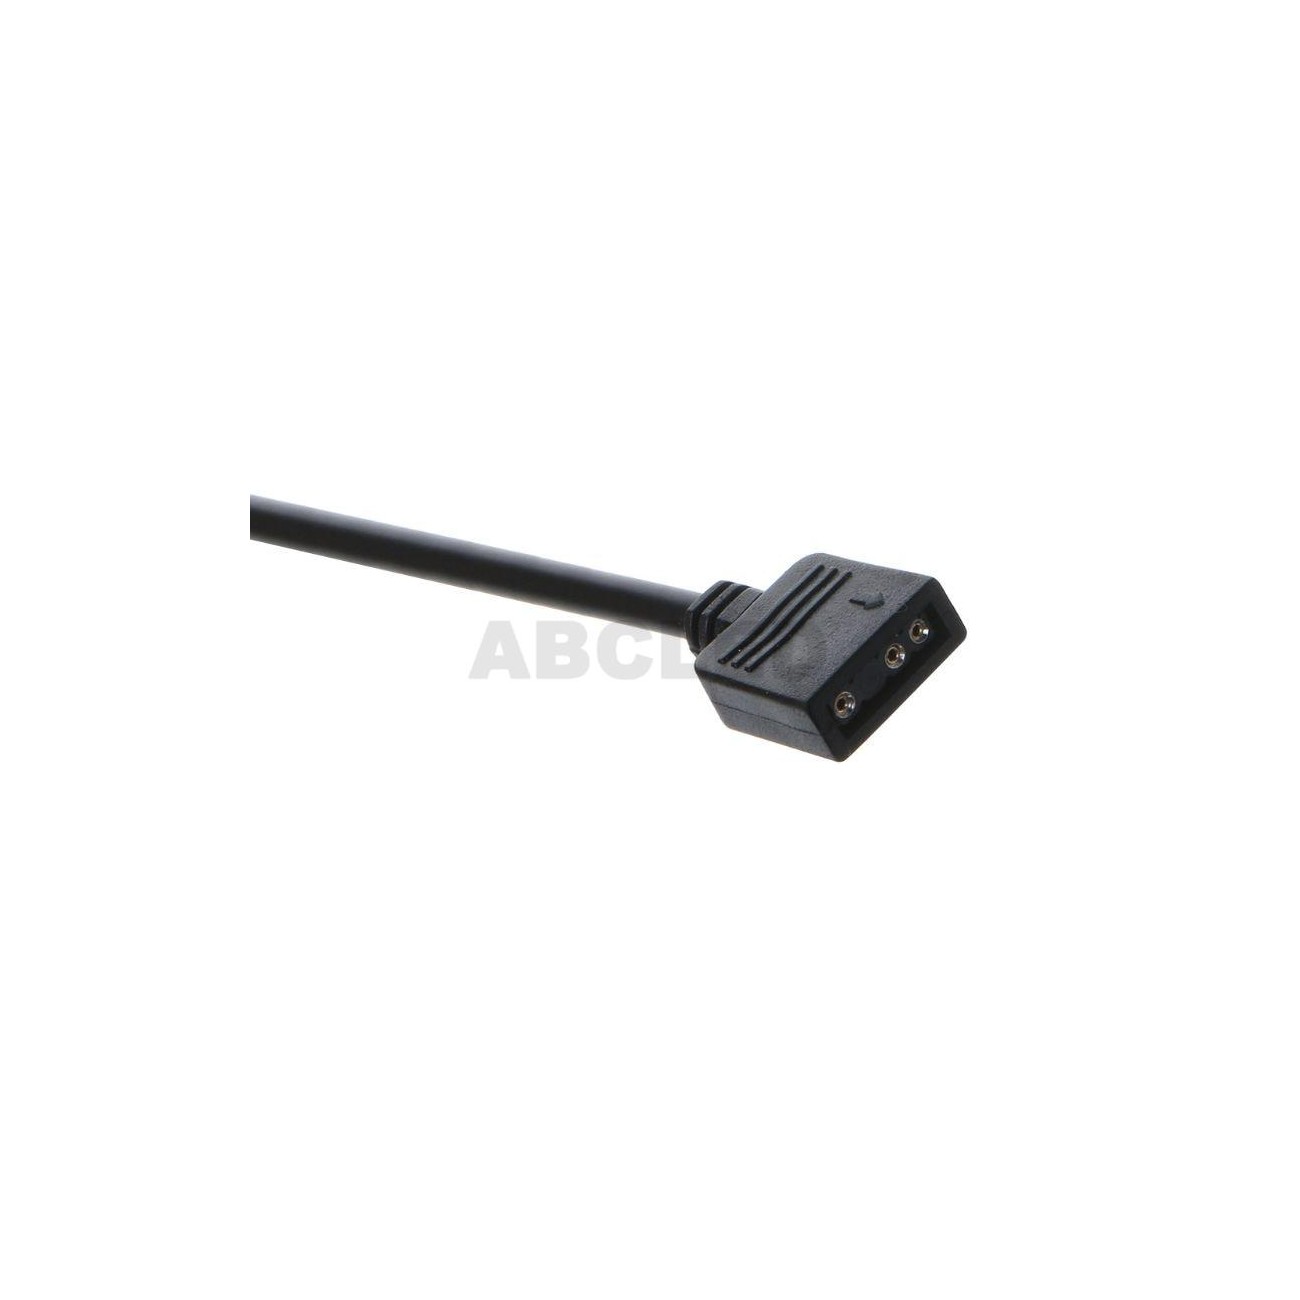 AURA 5V 3-pin RGB 10 Hub Splitter SATA ABCLED-kaupassa vain 14.90€